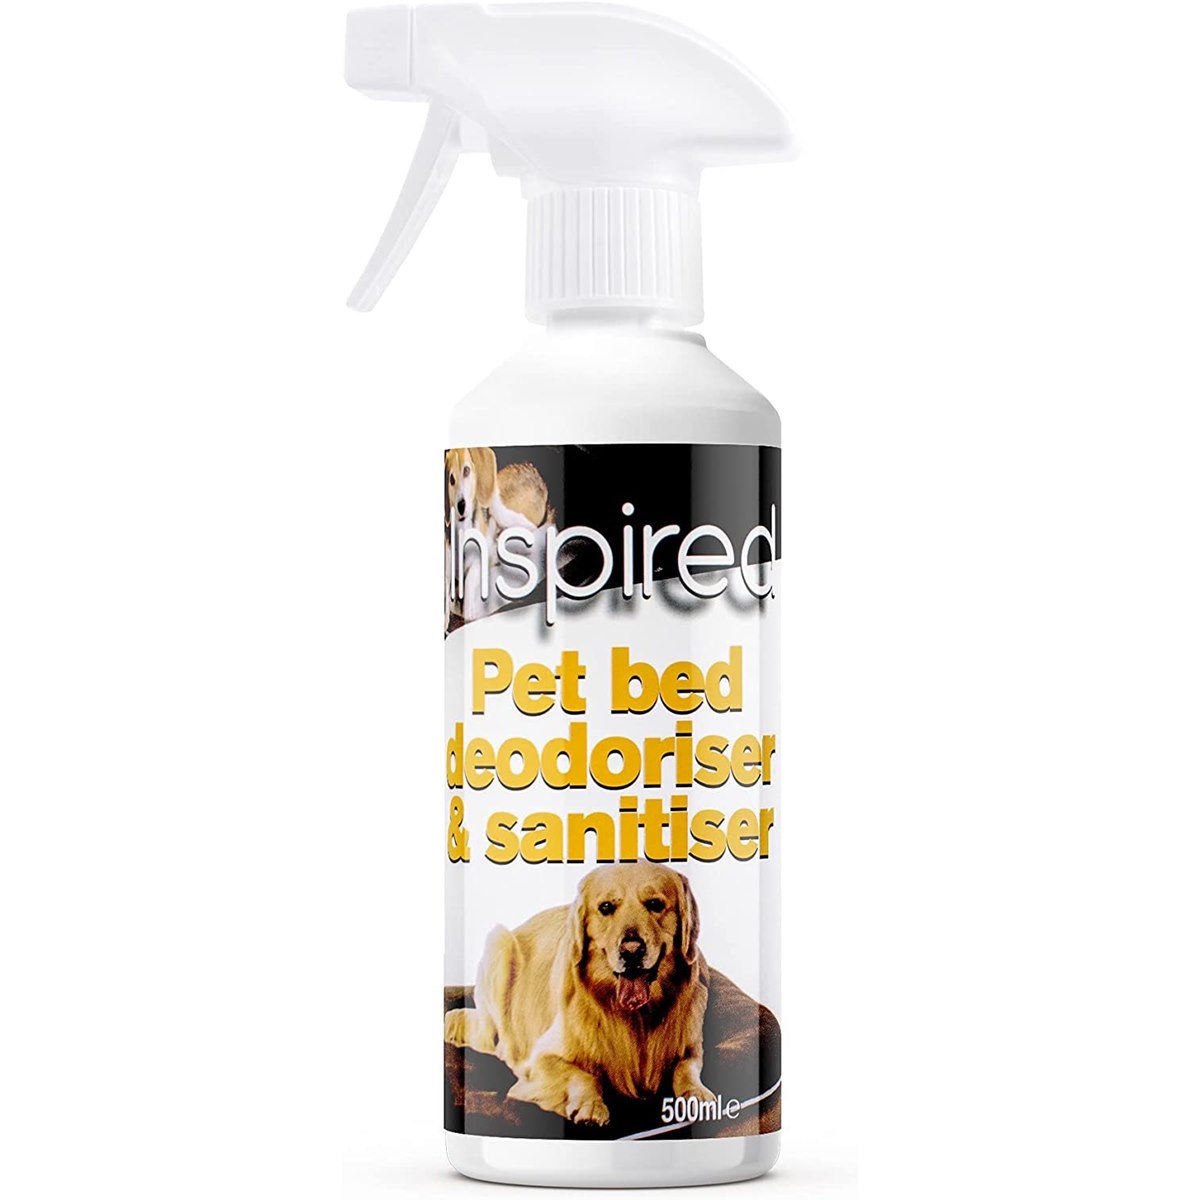 Inspired Pet Bed Deodoriser and Sanitiser Spray 500ml